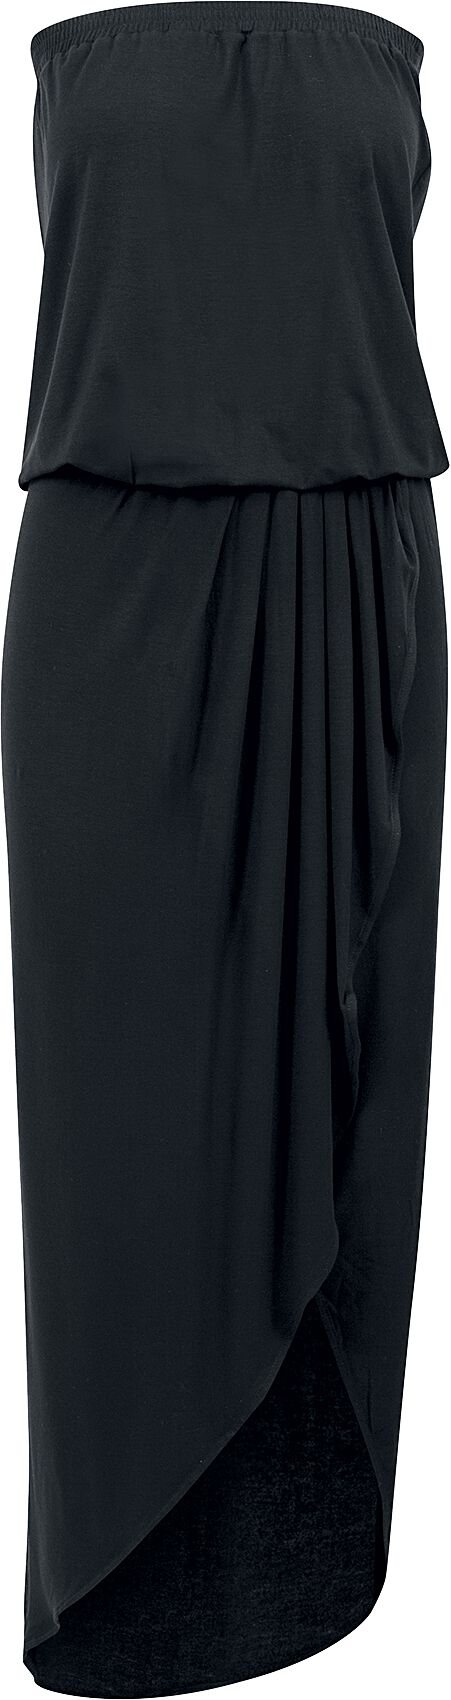 Urban Classics Kleid lang - Ladies Viscose Bandeau Dress - XS bis 5XL - für Damen - Größe 3XL - schwarz von Urban Classics